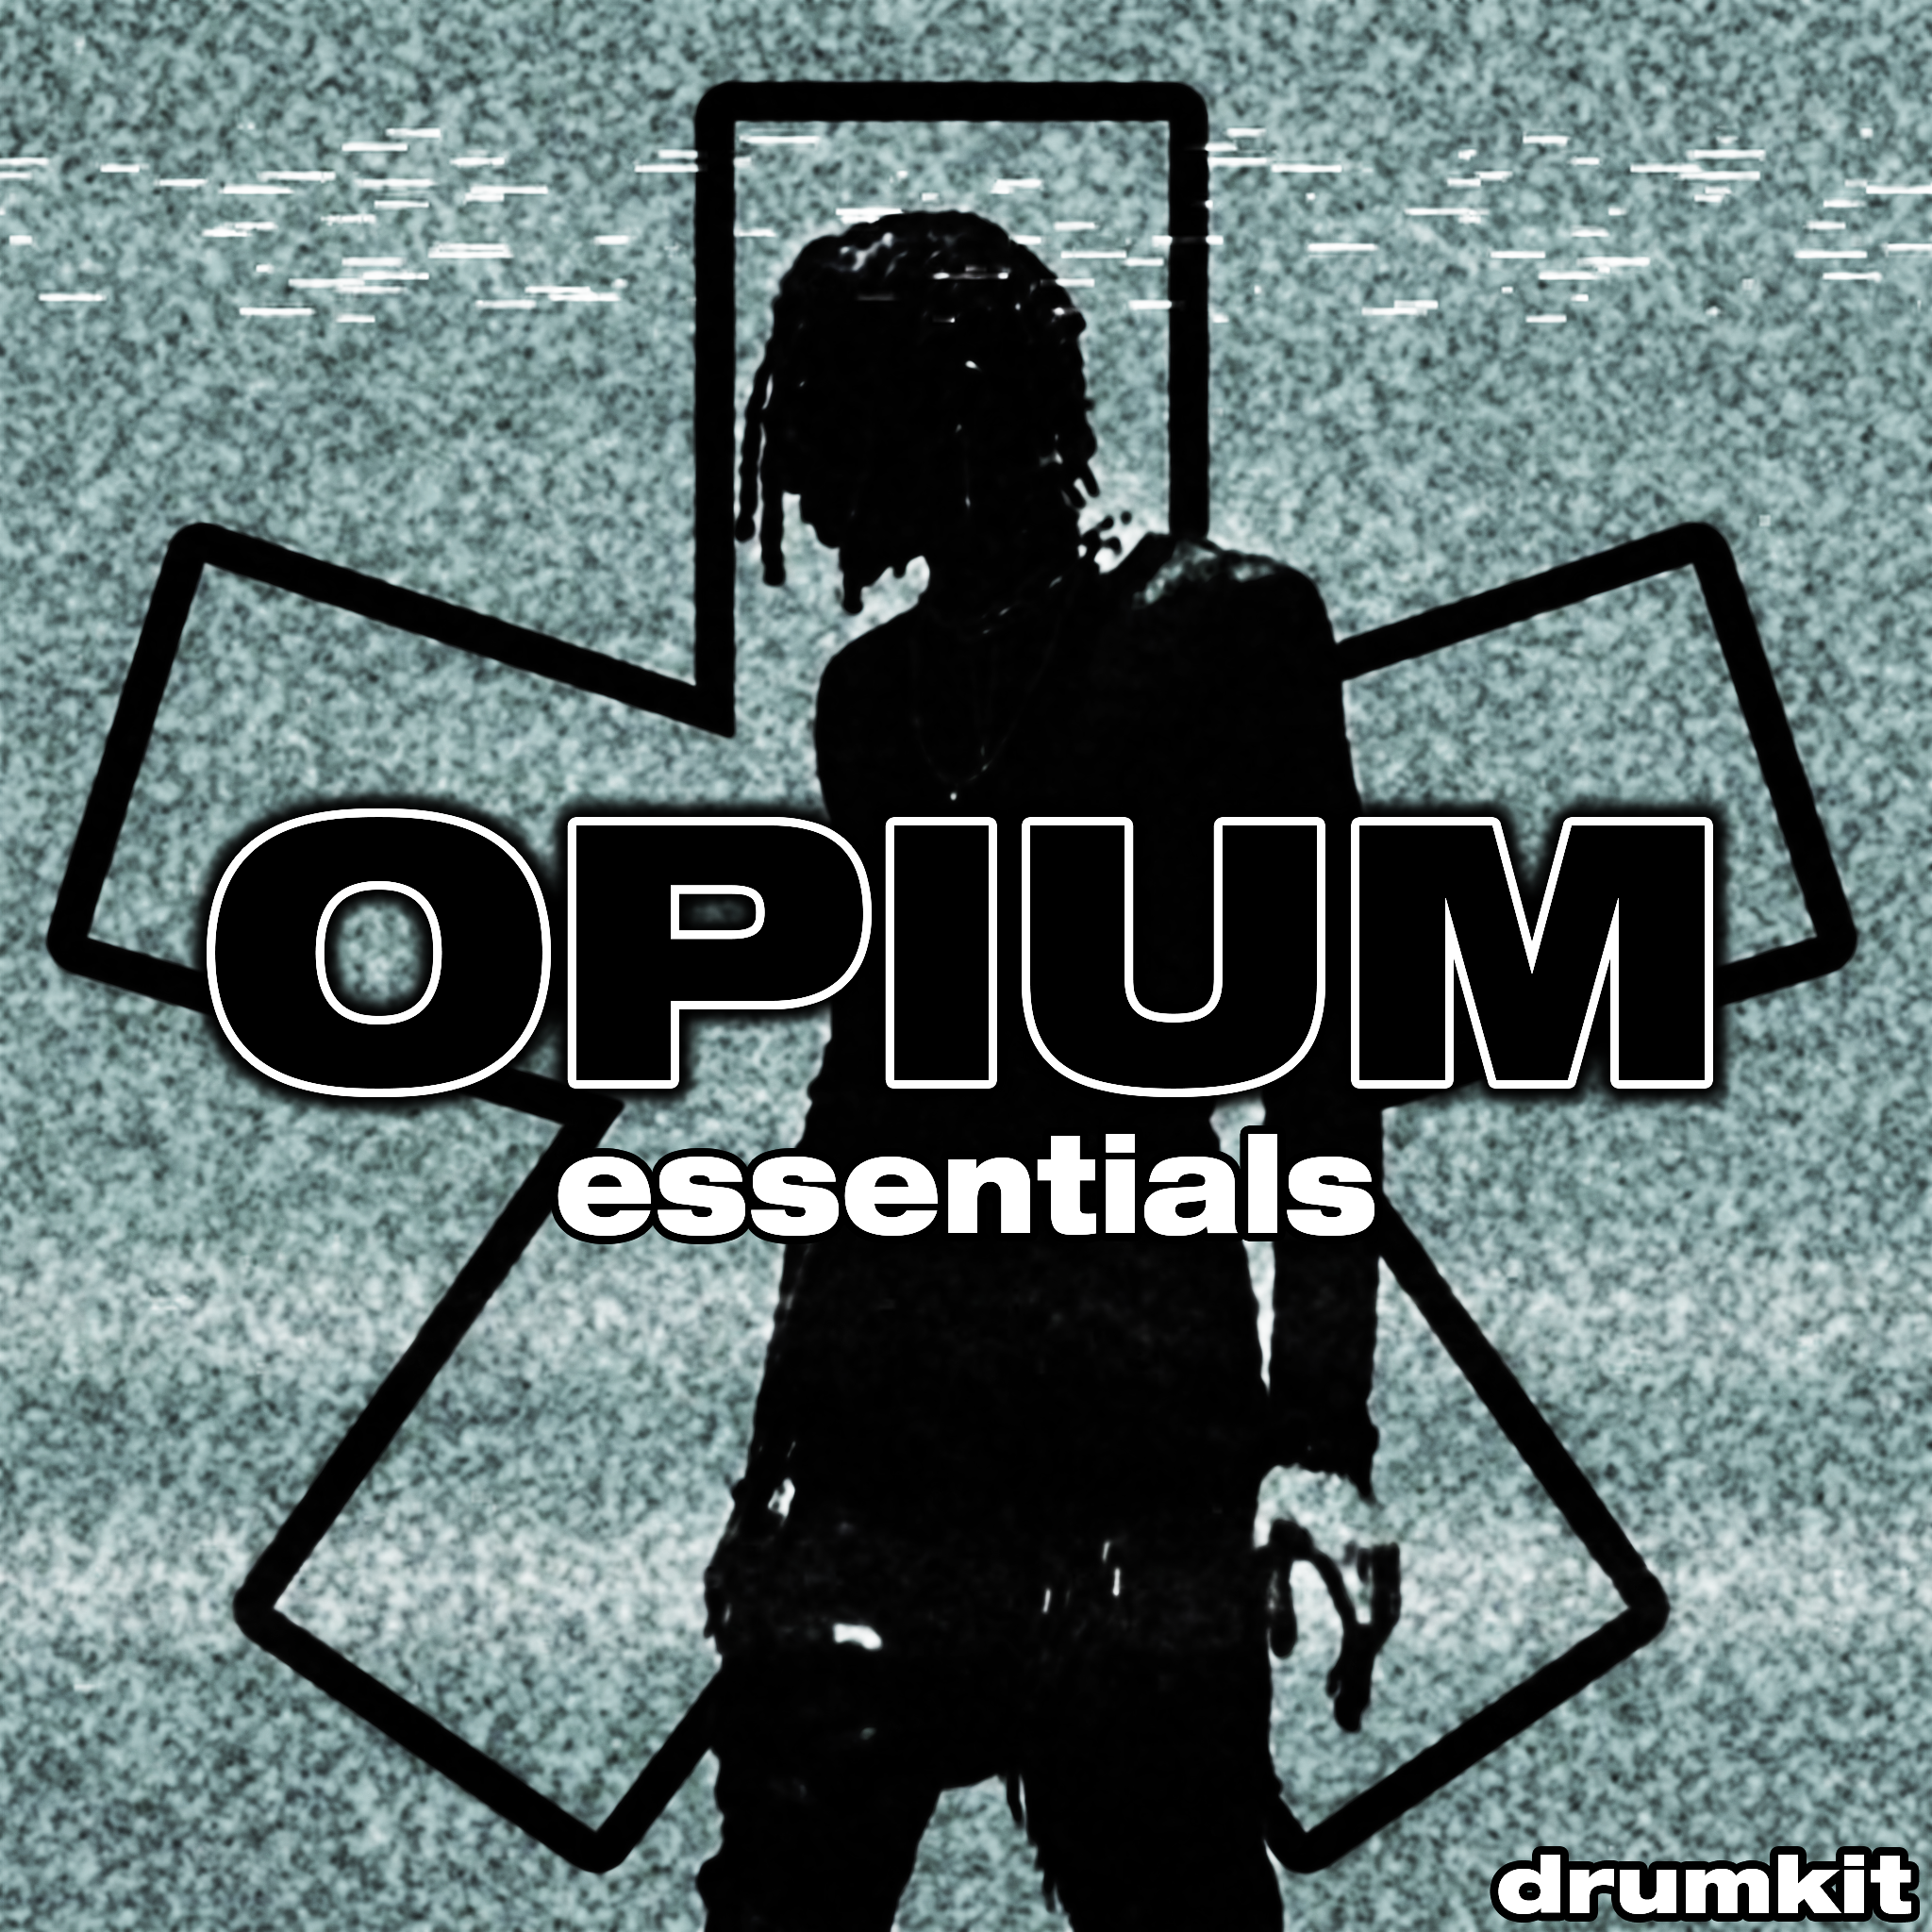 The Opium Essentials Drumkit